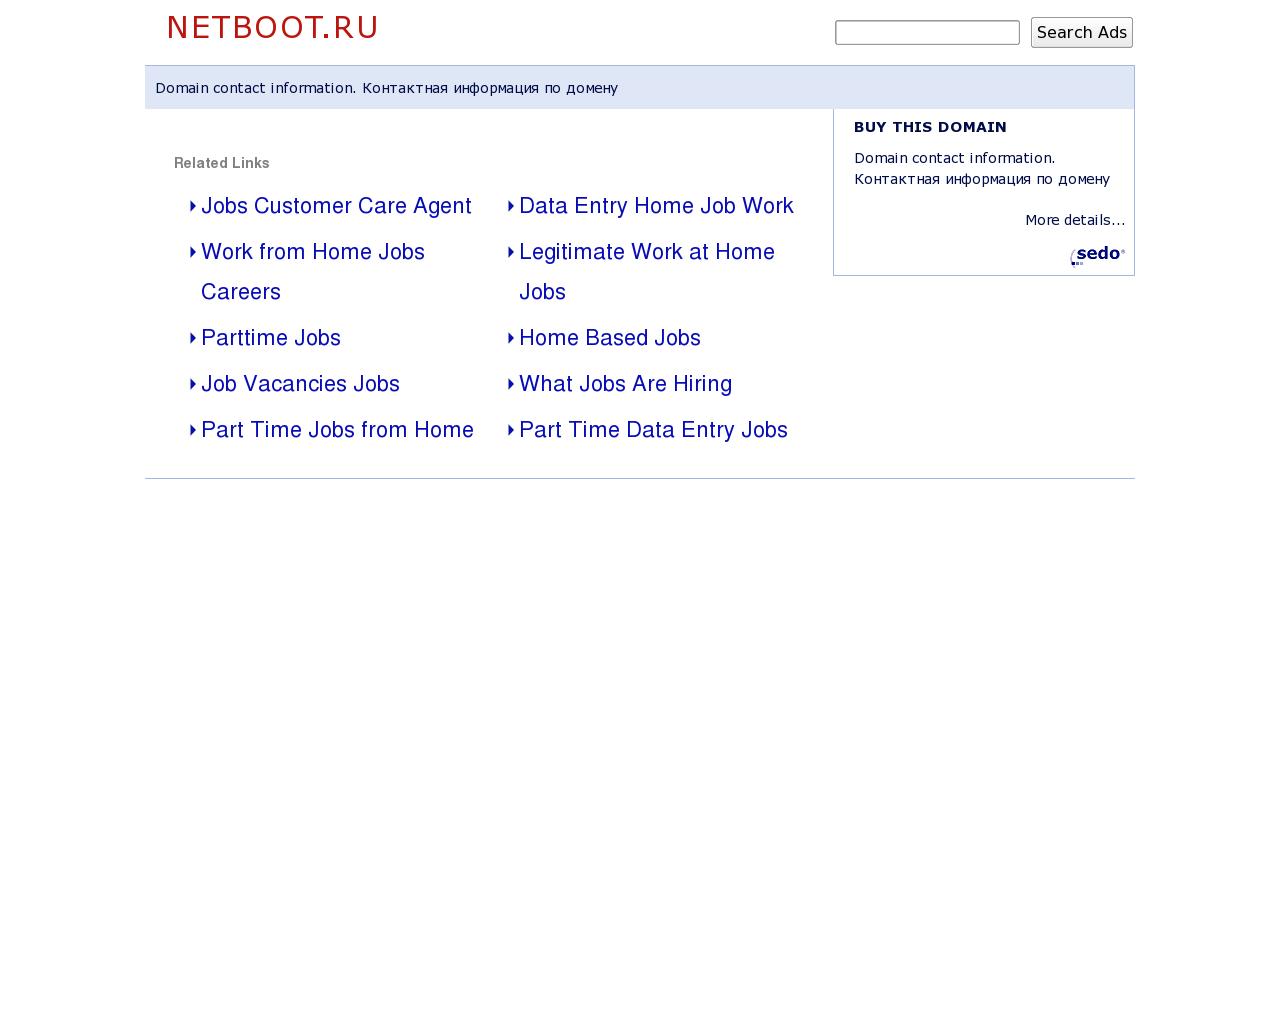 Изображение сайта netboot.ru в разрешении 1280x1024